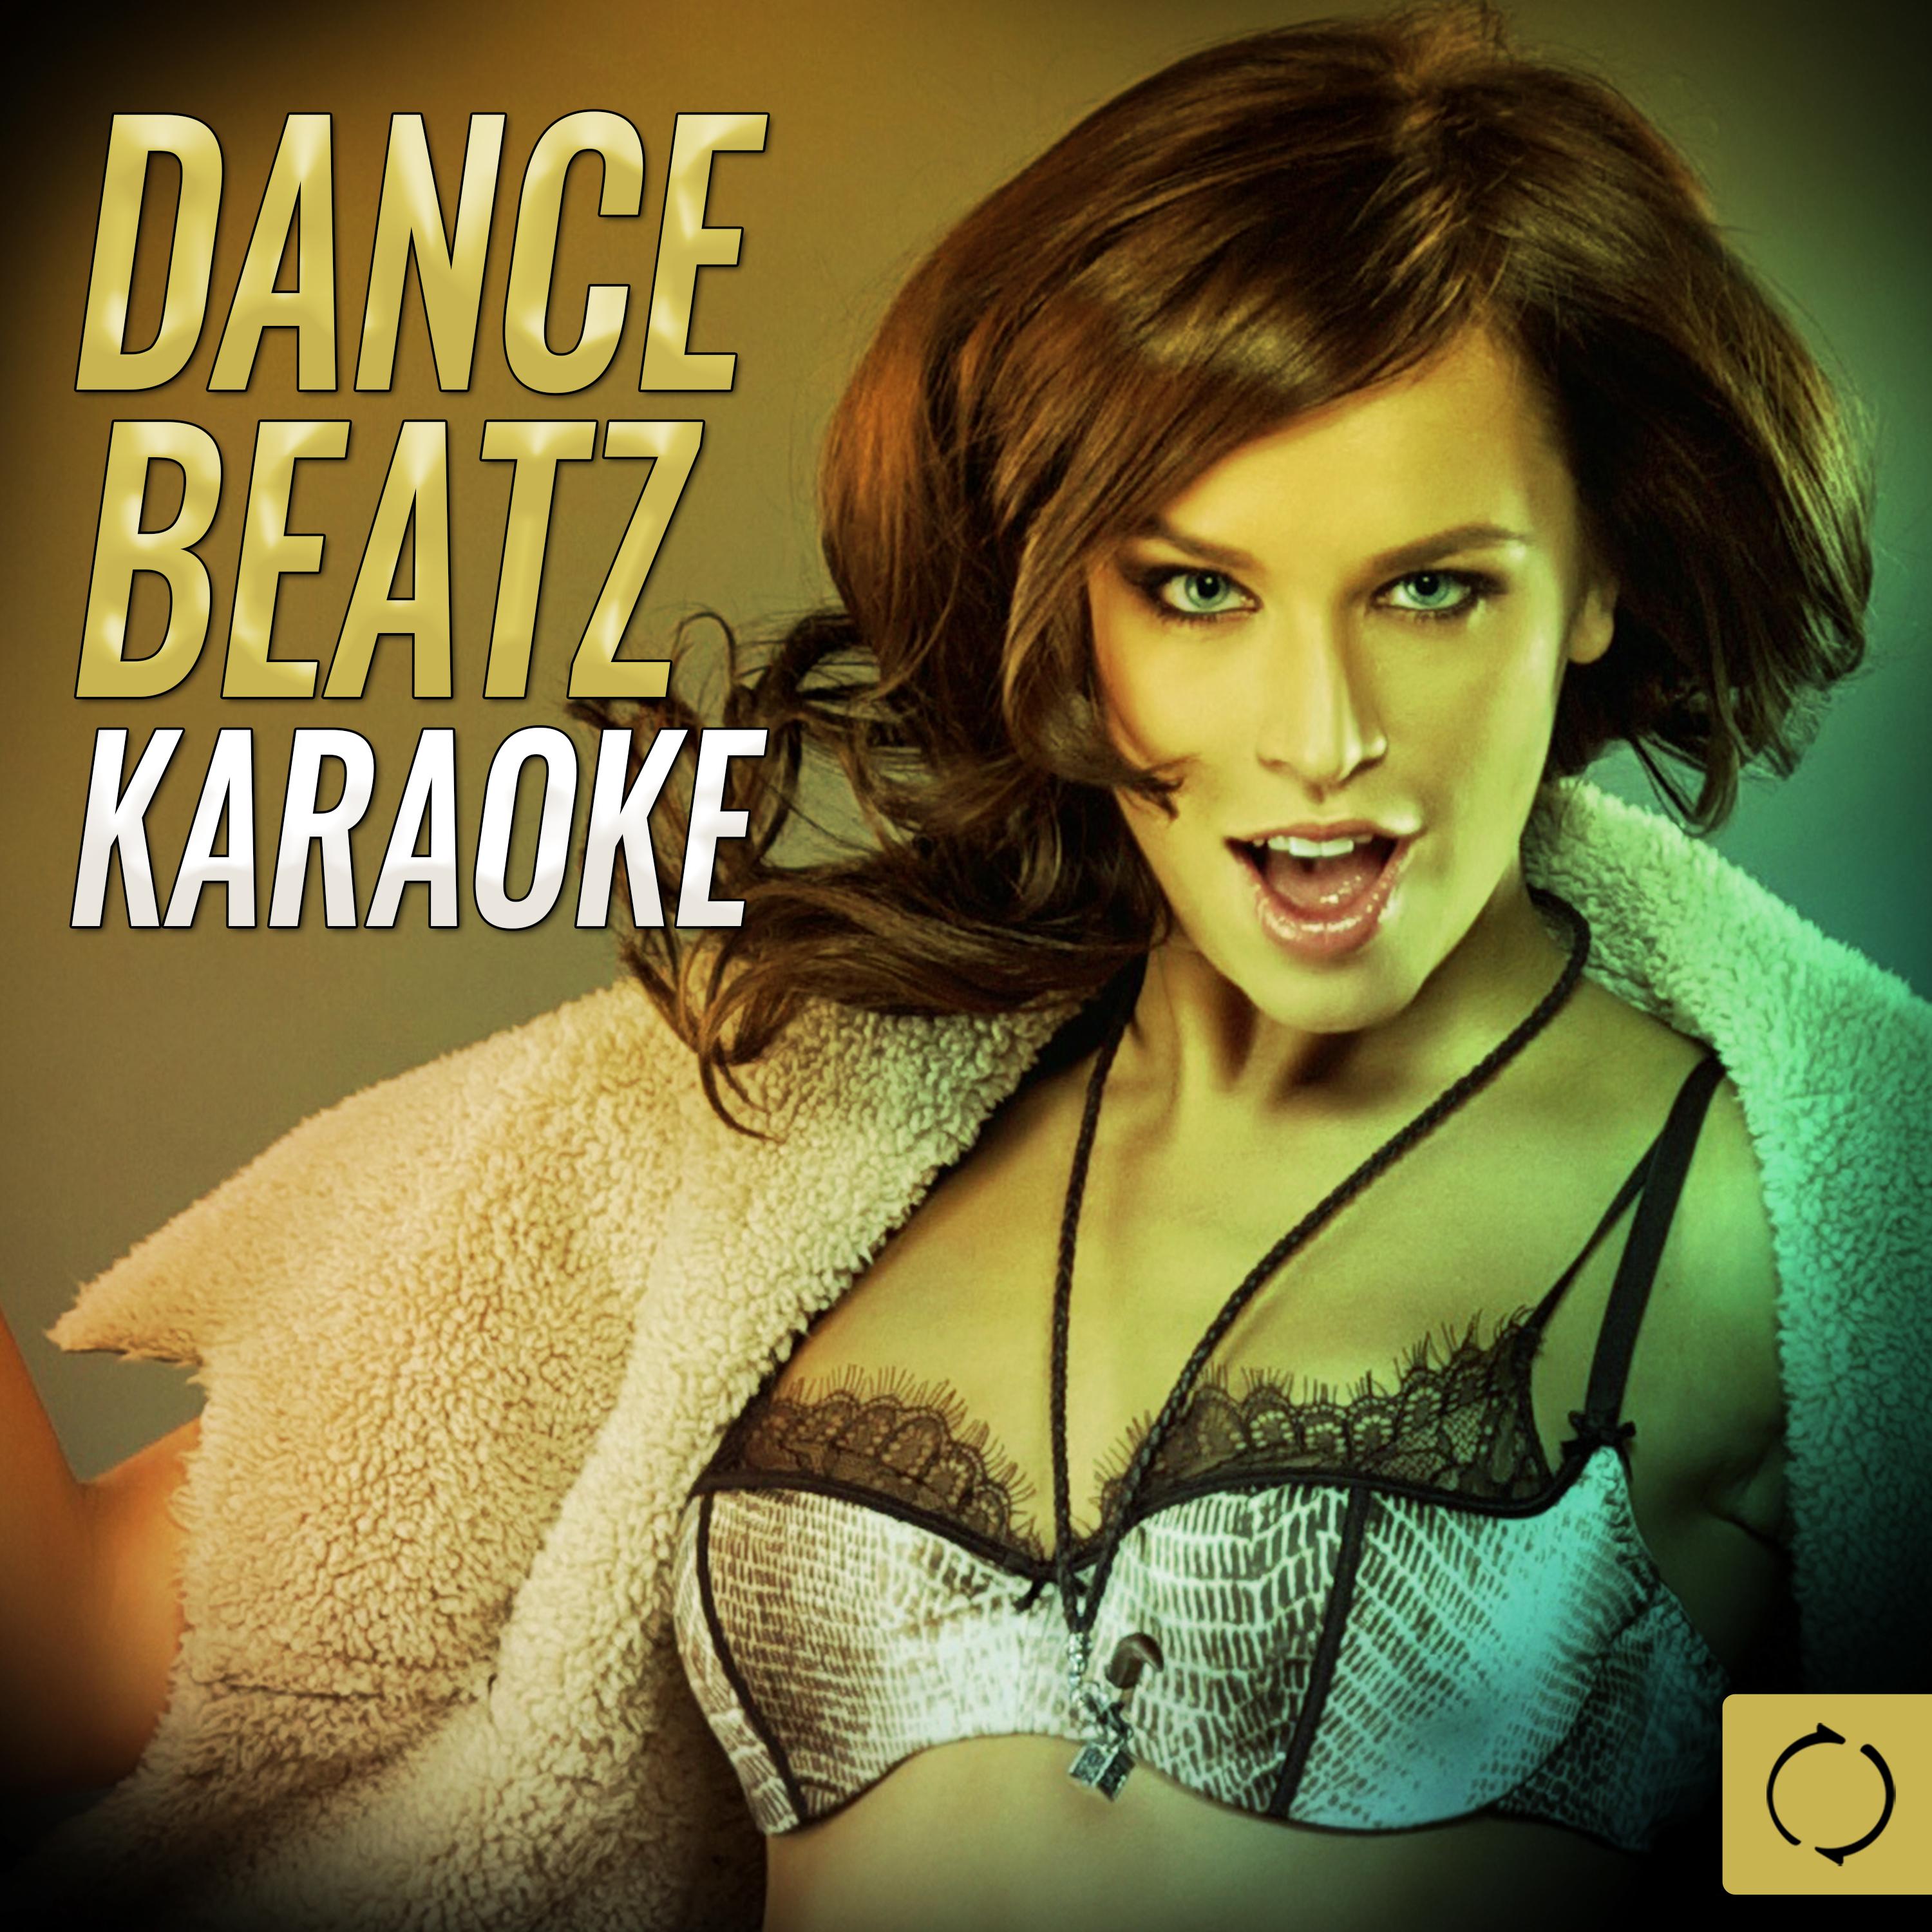 Dance Beatz Karaoke